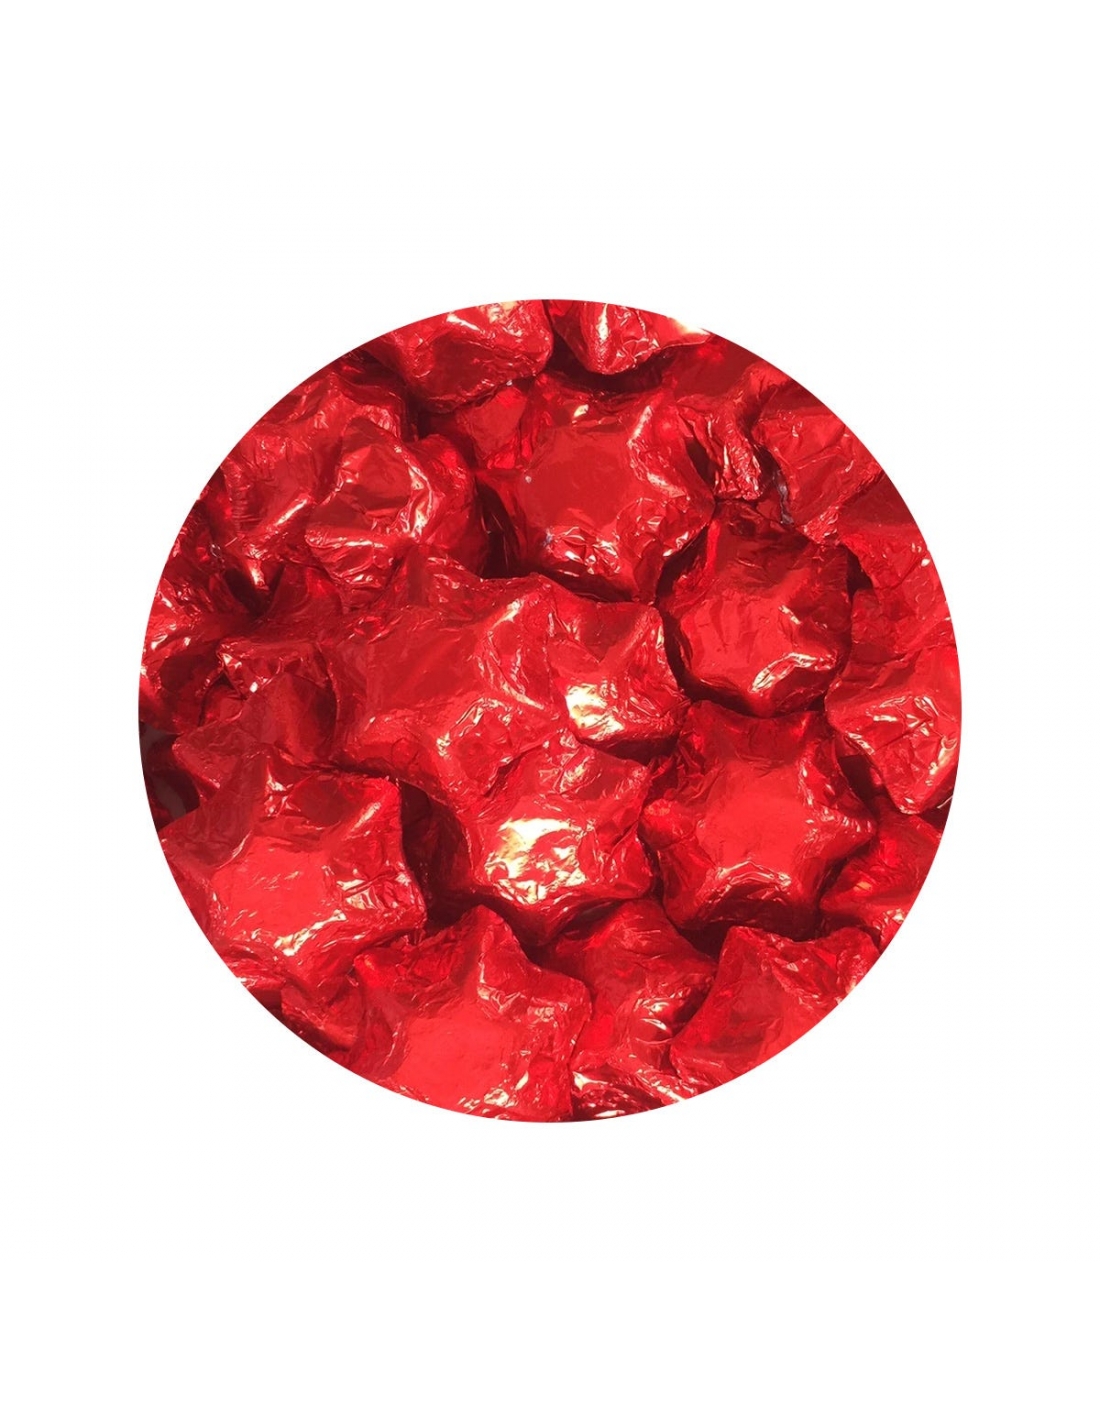 Lolliland Schokoladensterne rote Folie 120 Stück 1 kg